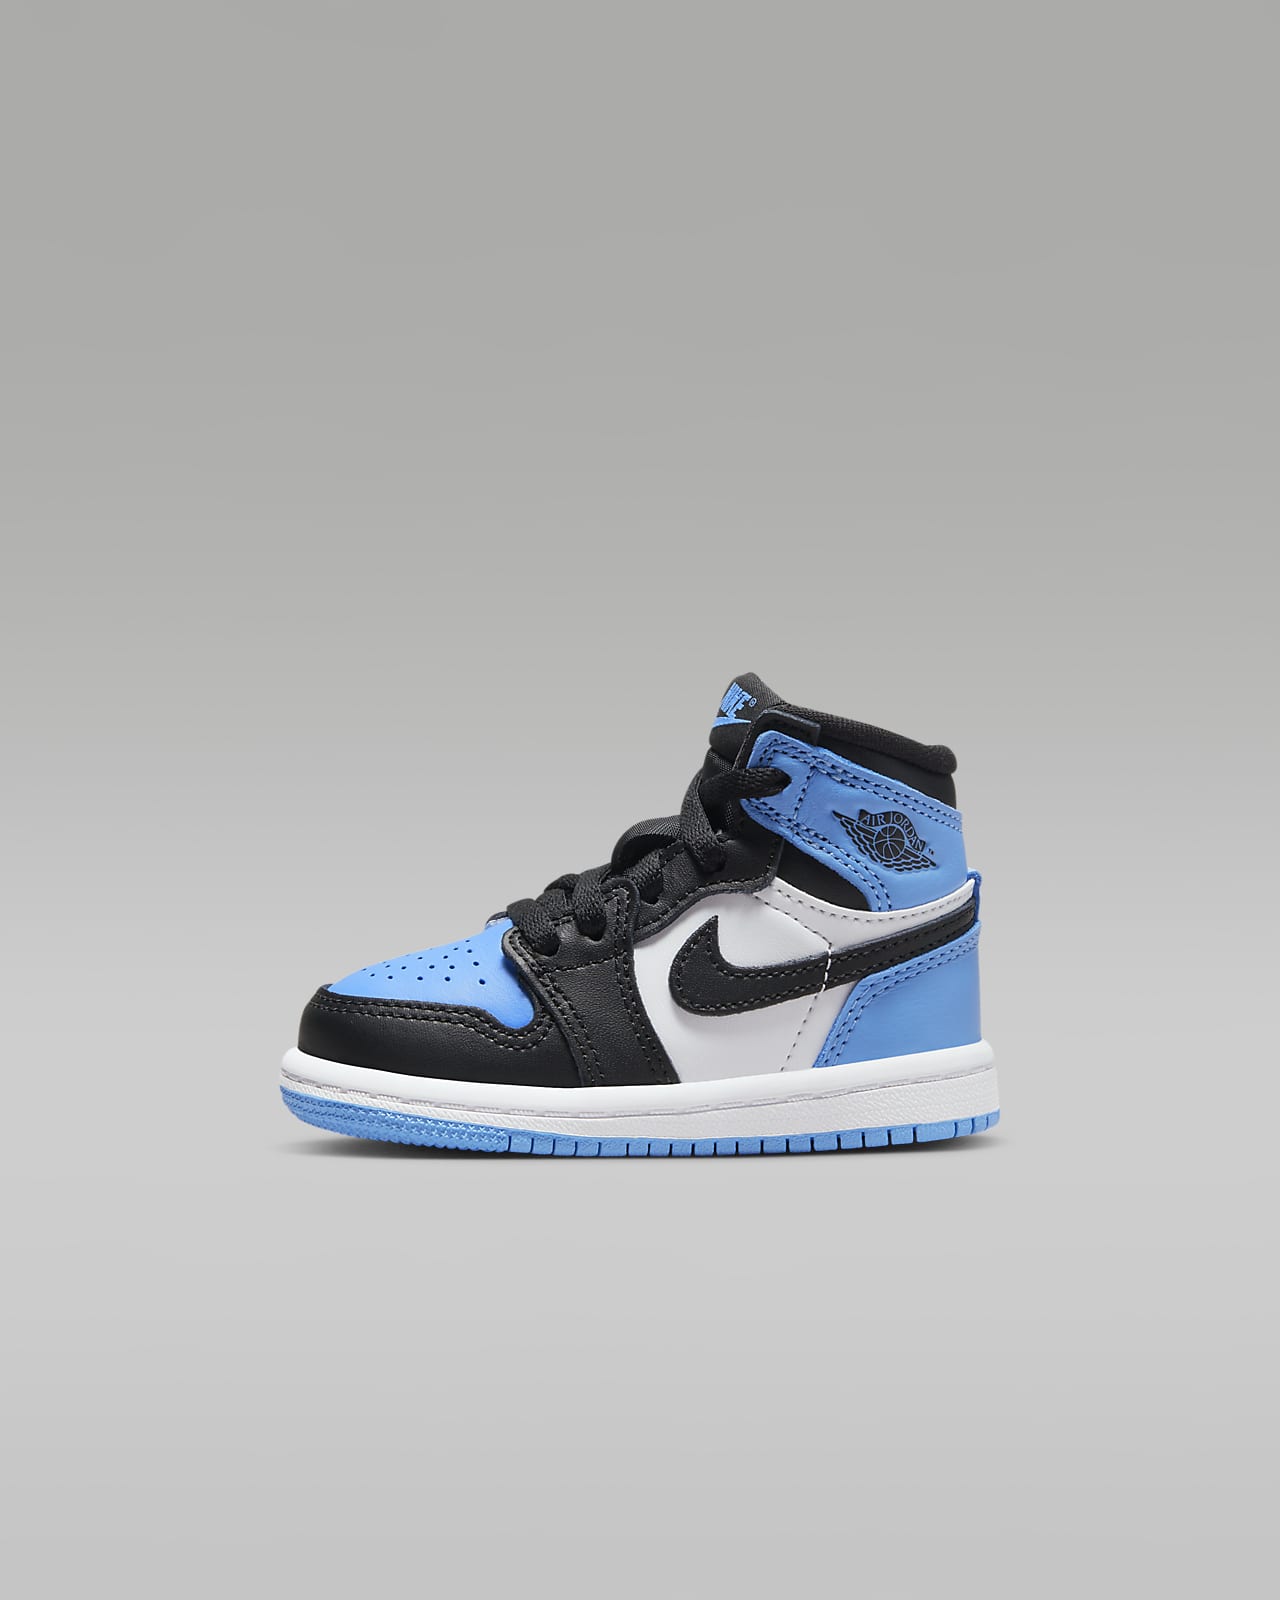 Jordan 1 High OG-sko babyer/småbørn. Nike DK